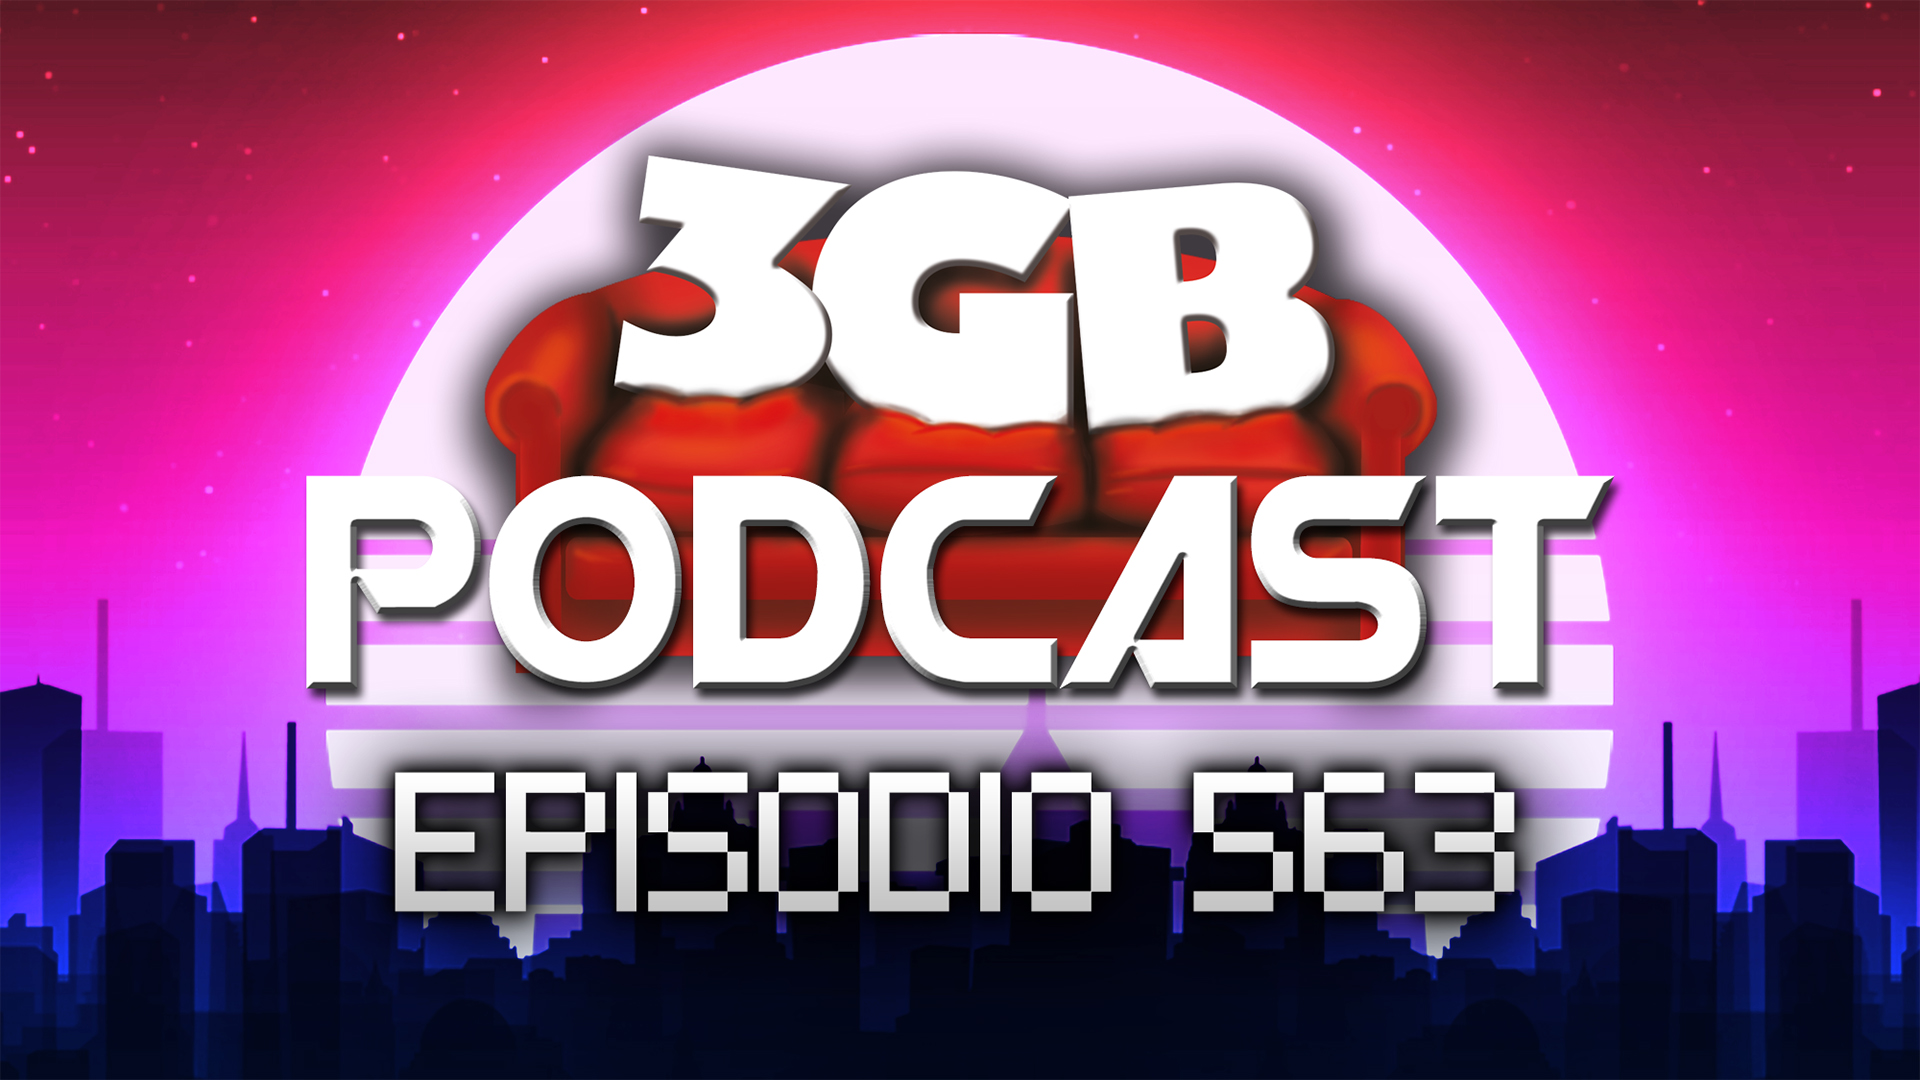 Podcast: Episodio 563, Detox de Juegos de Servicio